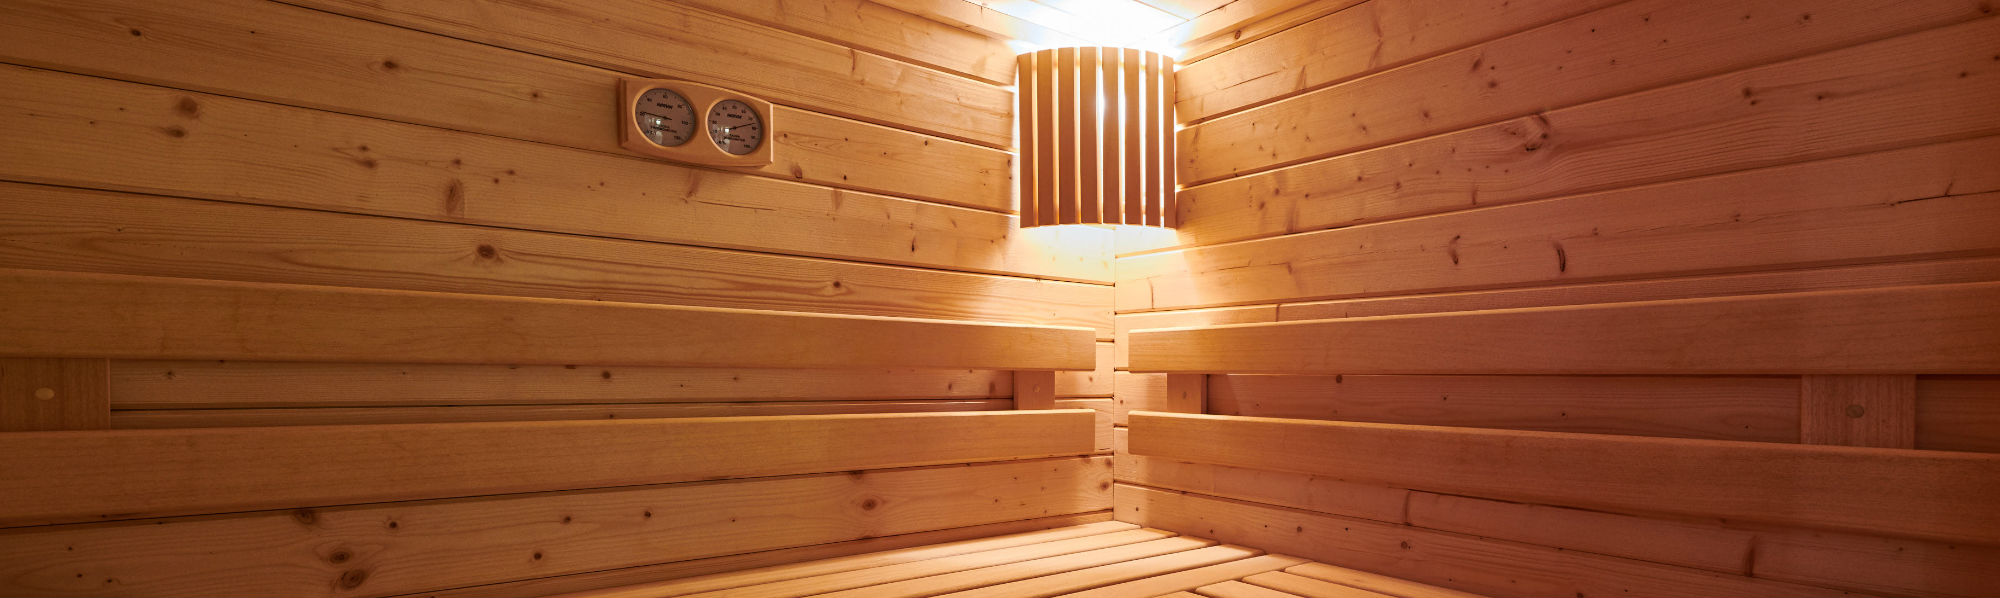 Sauna home page